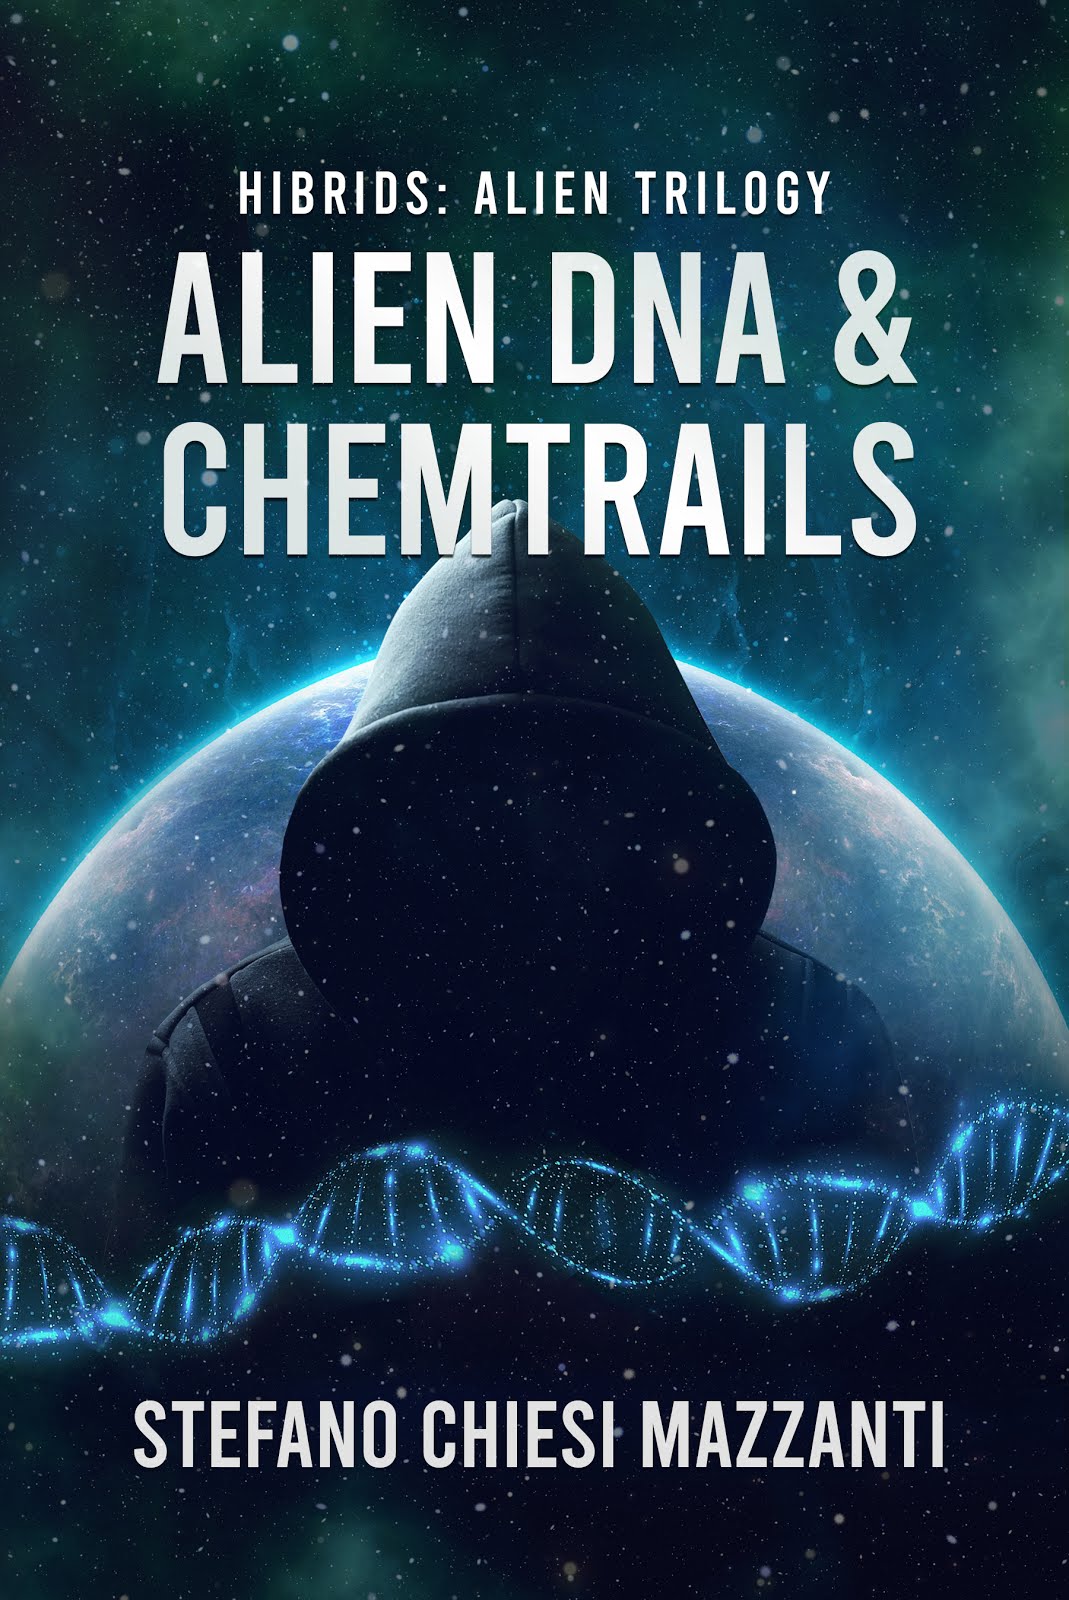 DNA alien & chemtrails